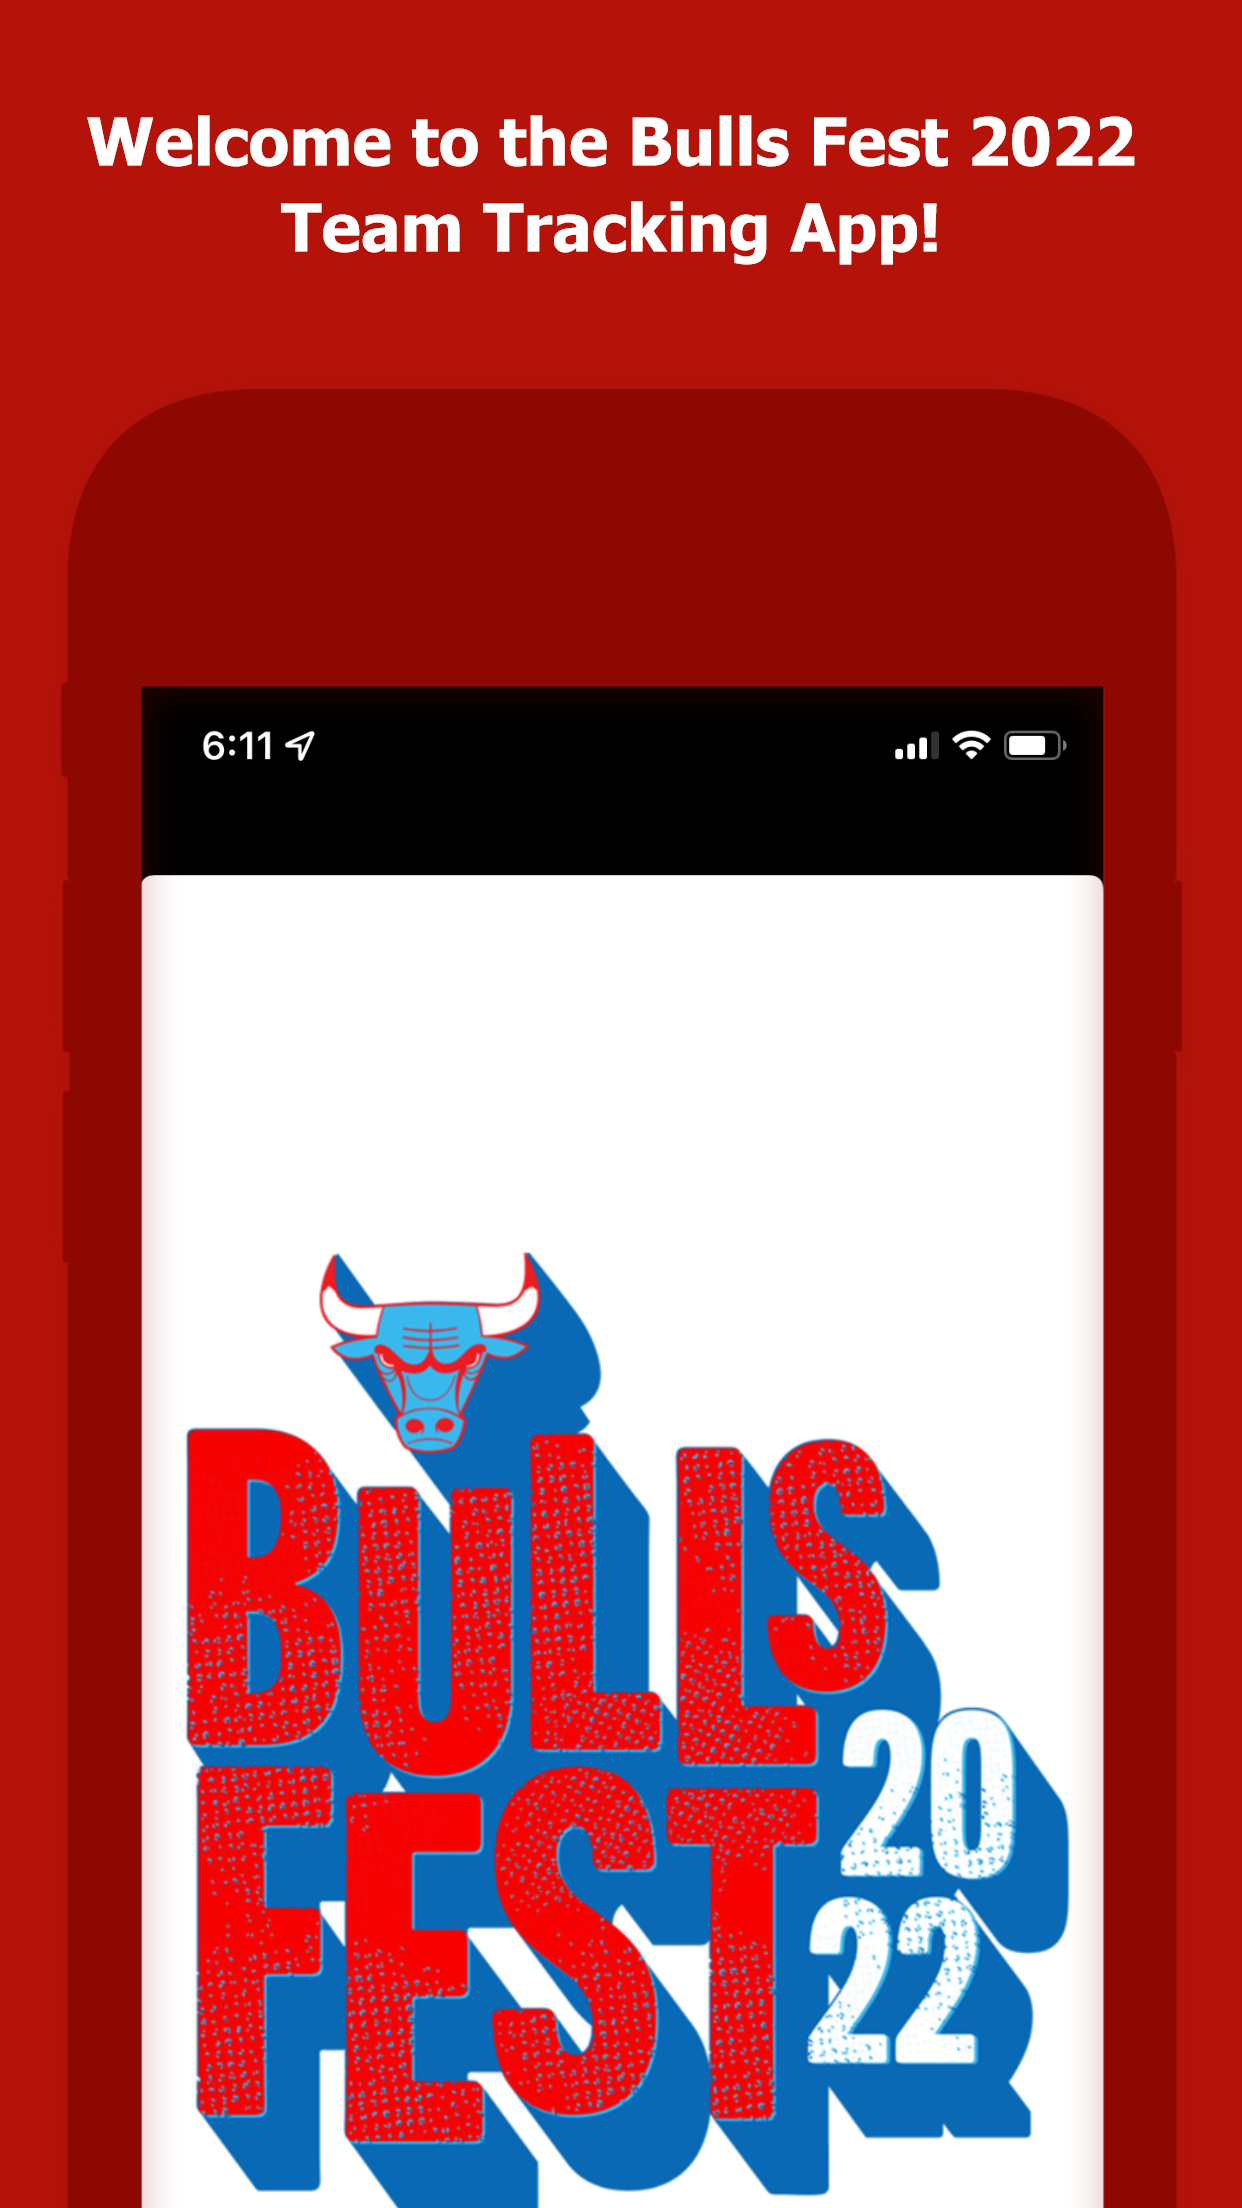 Bulls Fest 2022 Donate to Chicago Bulls Charities Chicago Bulls